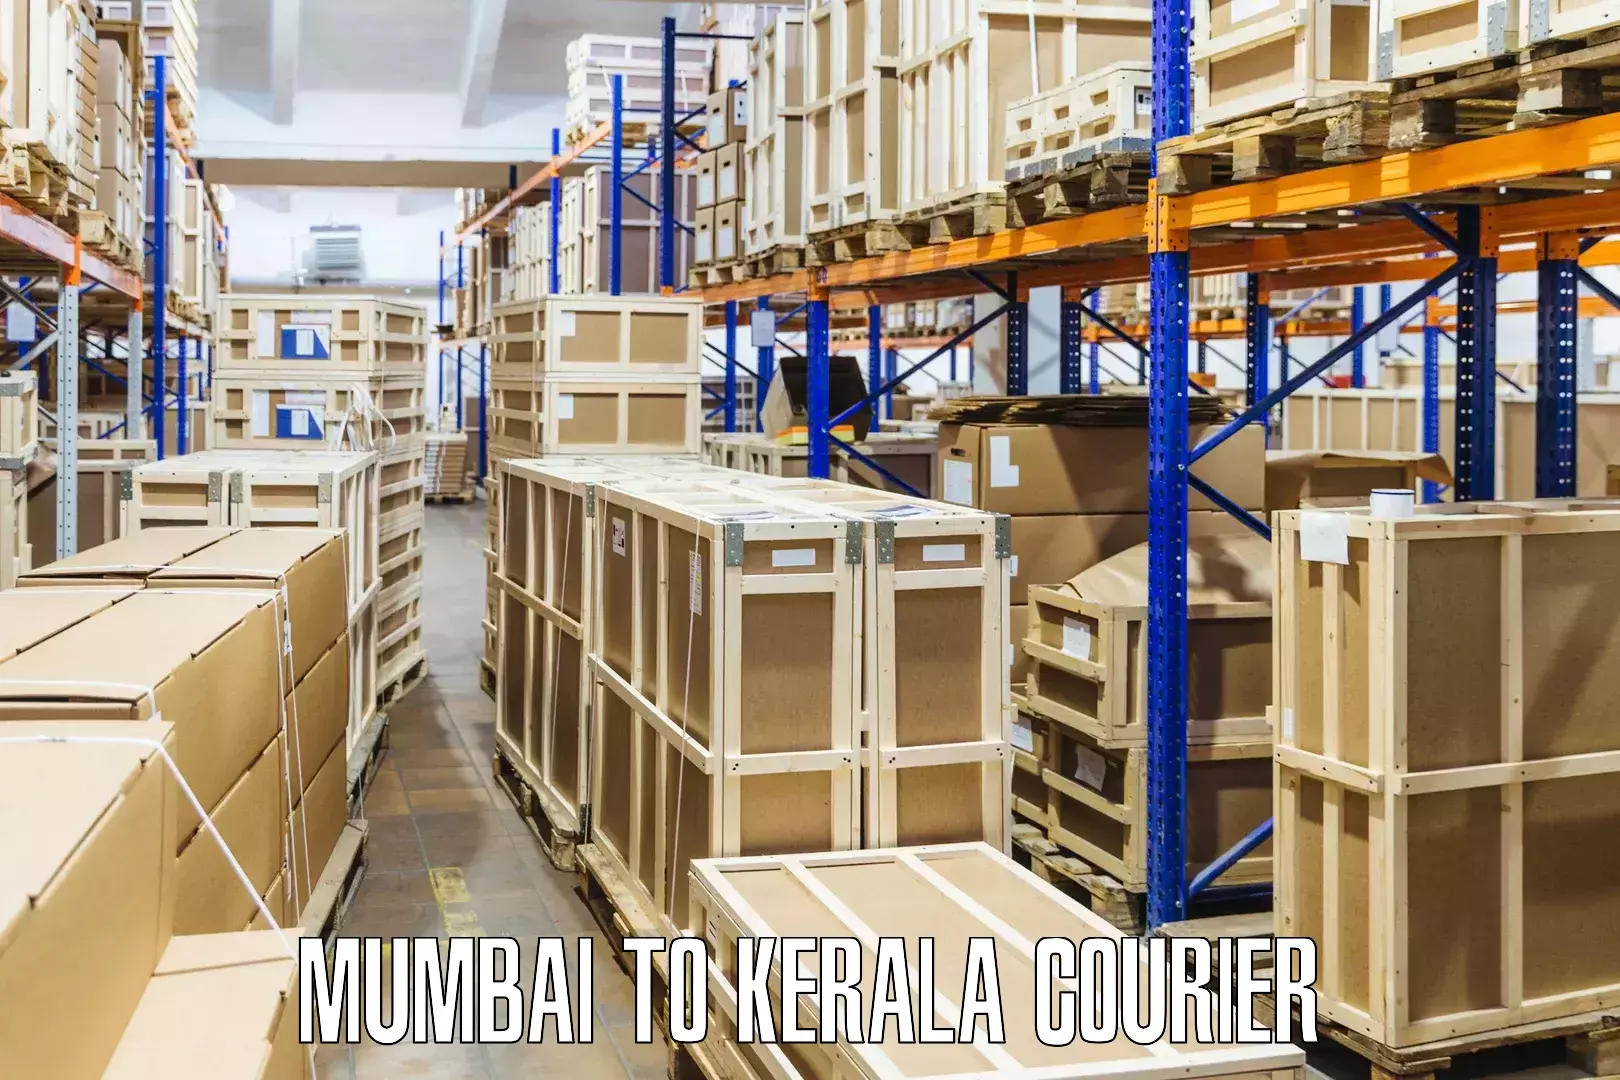 Premium courier solutions in Mumbai to Neyyattinkara